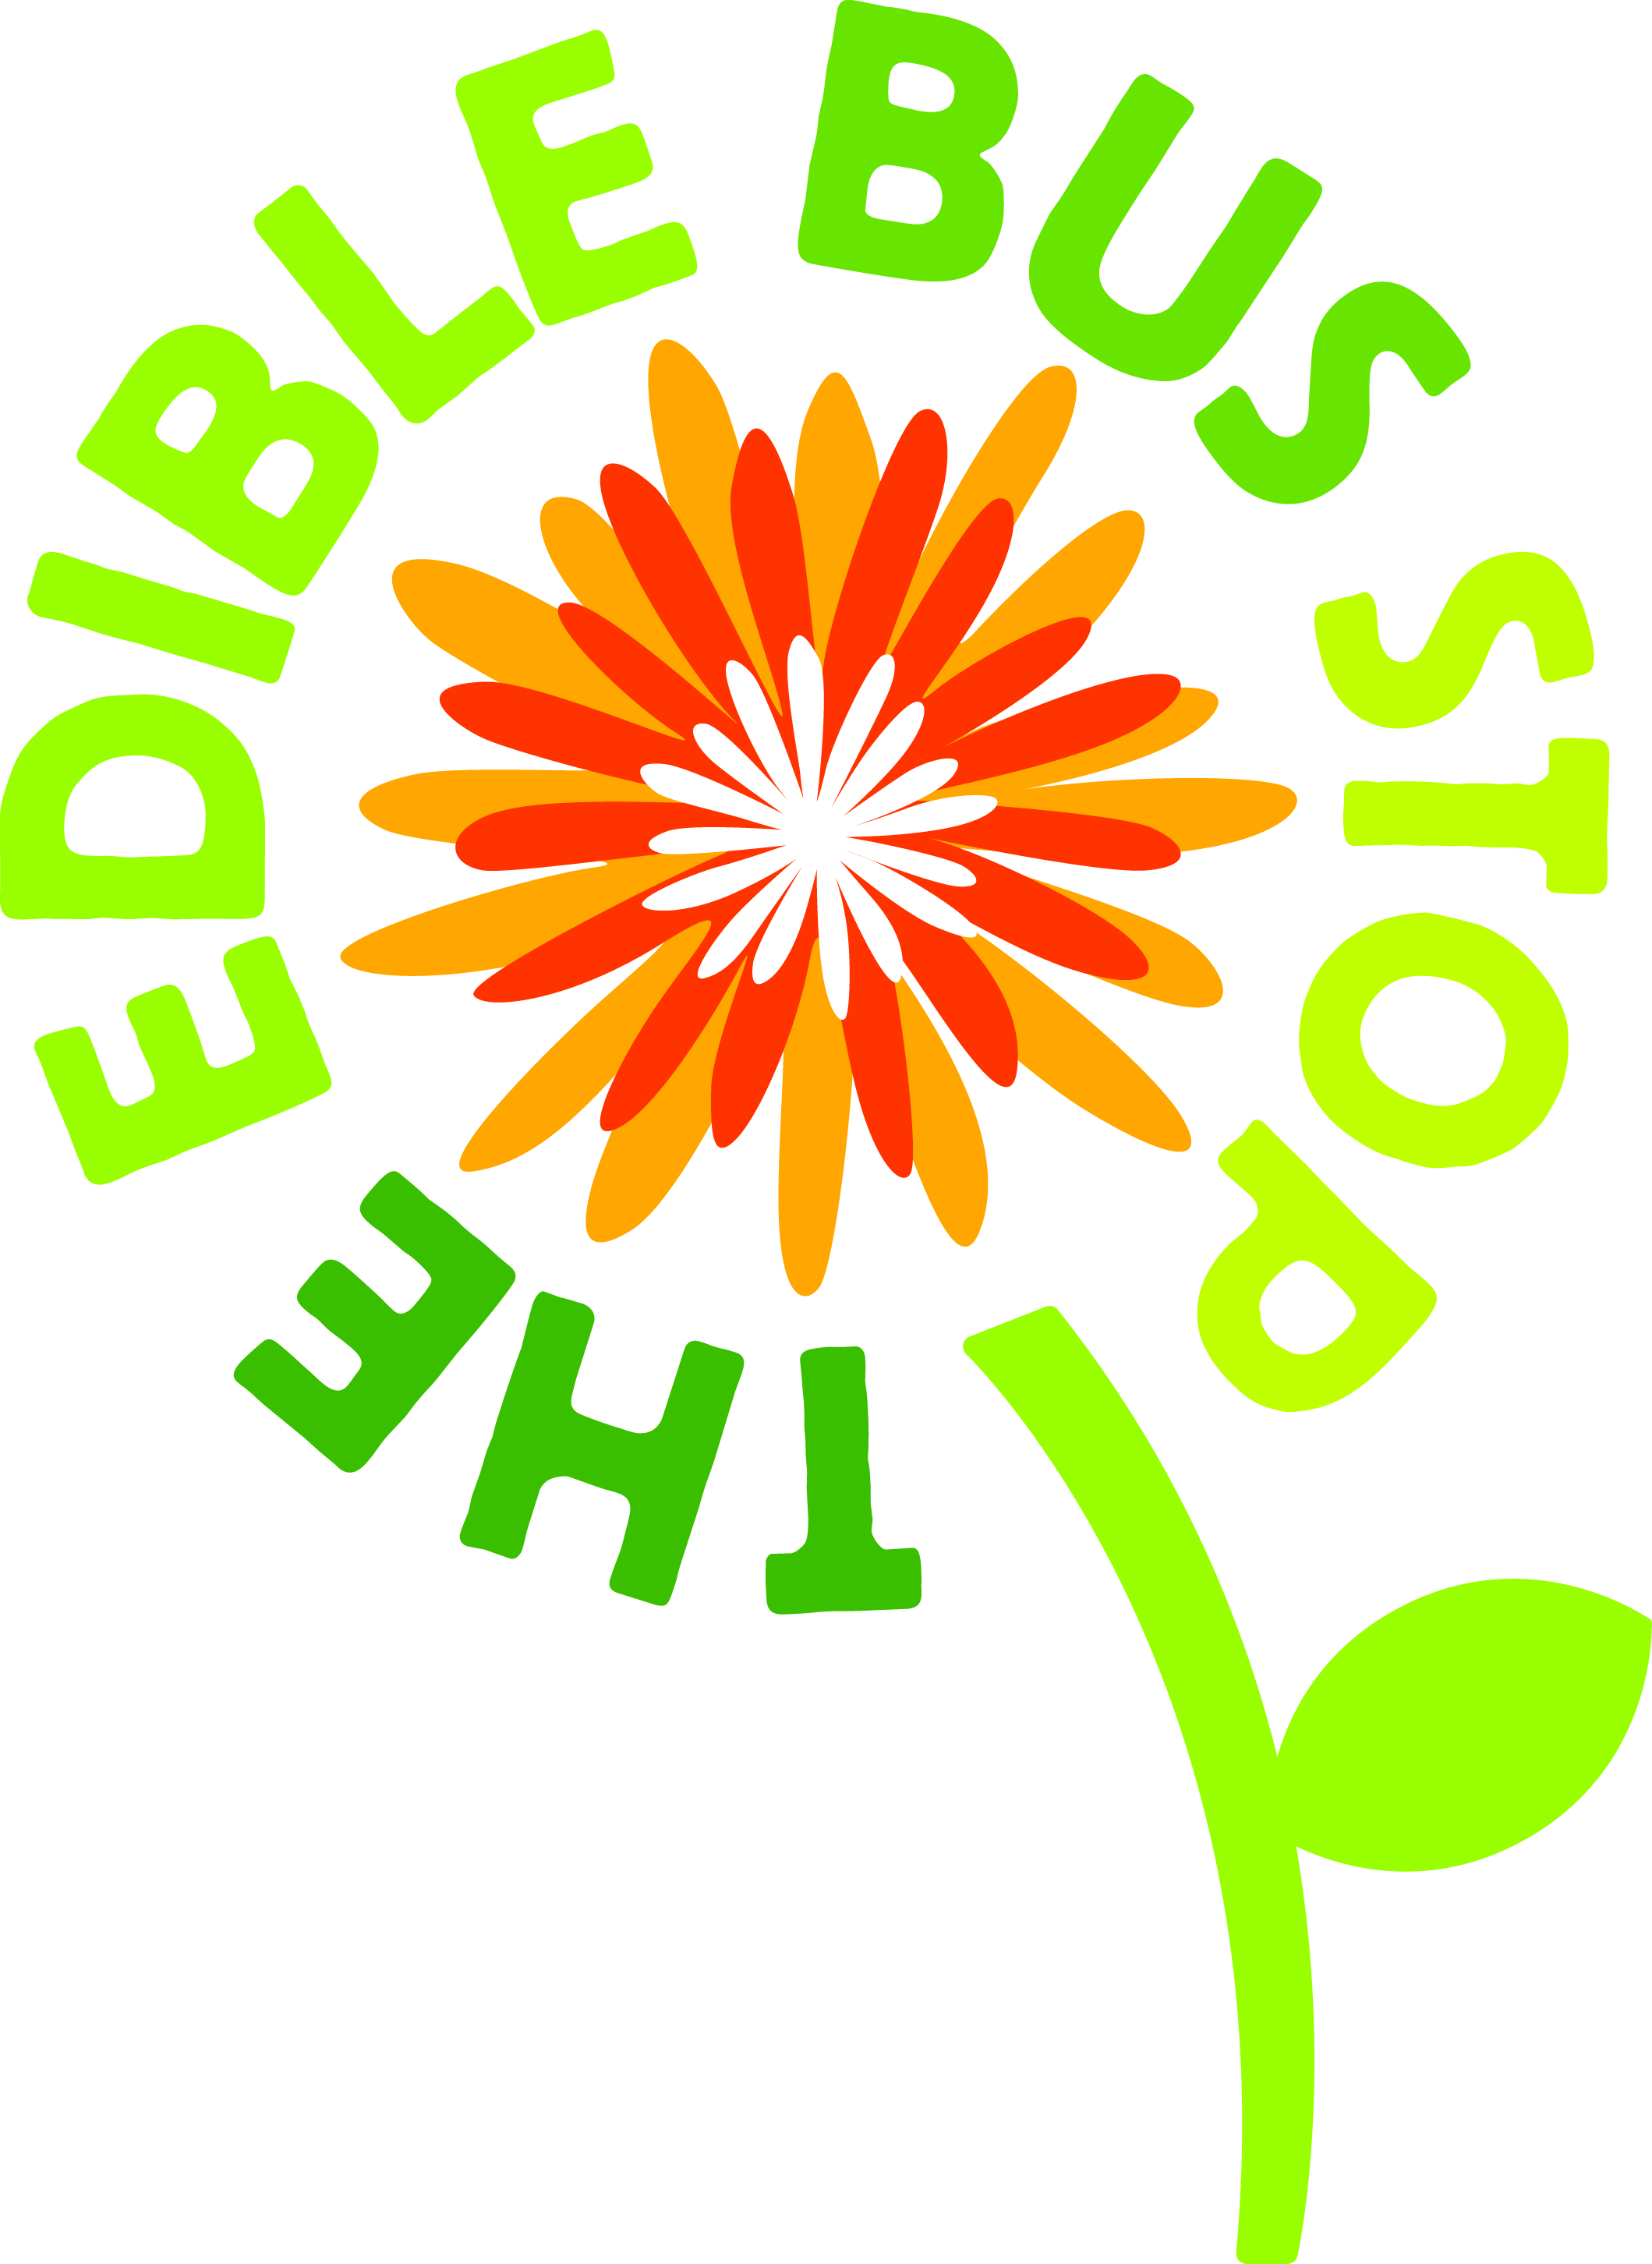 The Edible Bus Stop logo